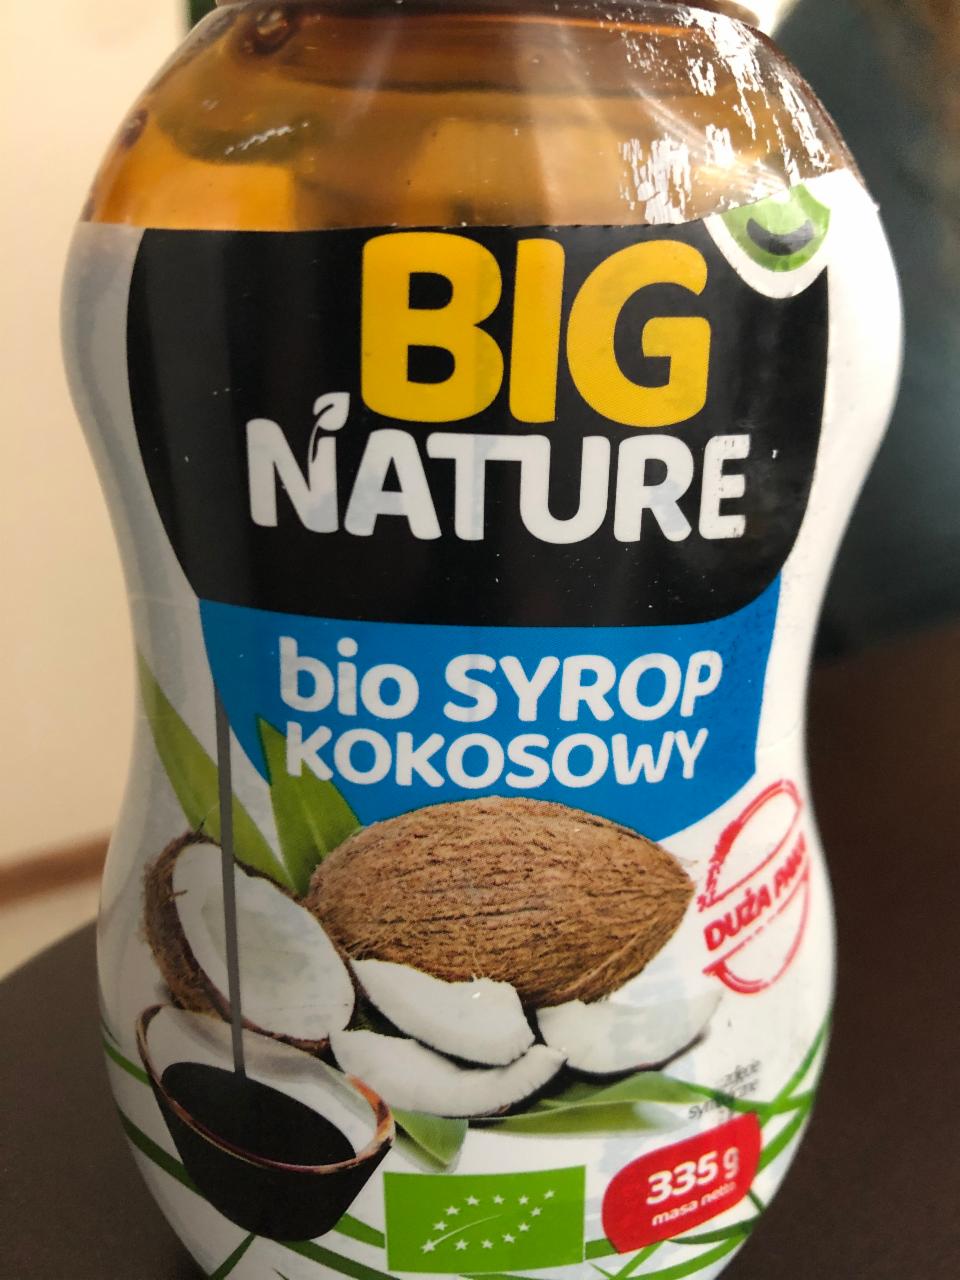 Zdjęcia - Bio Syrop kokosowy Big Nature